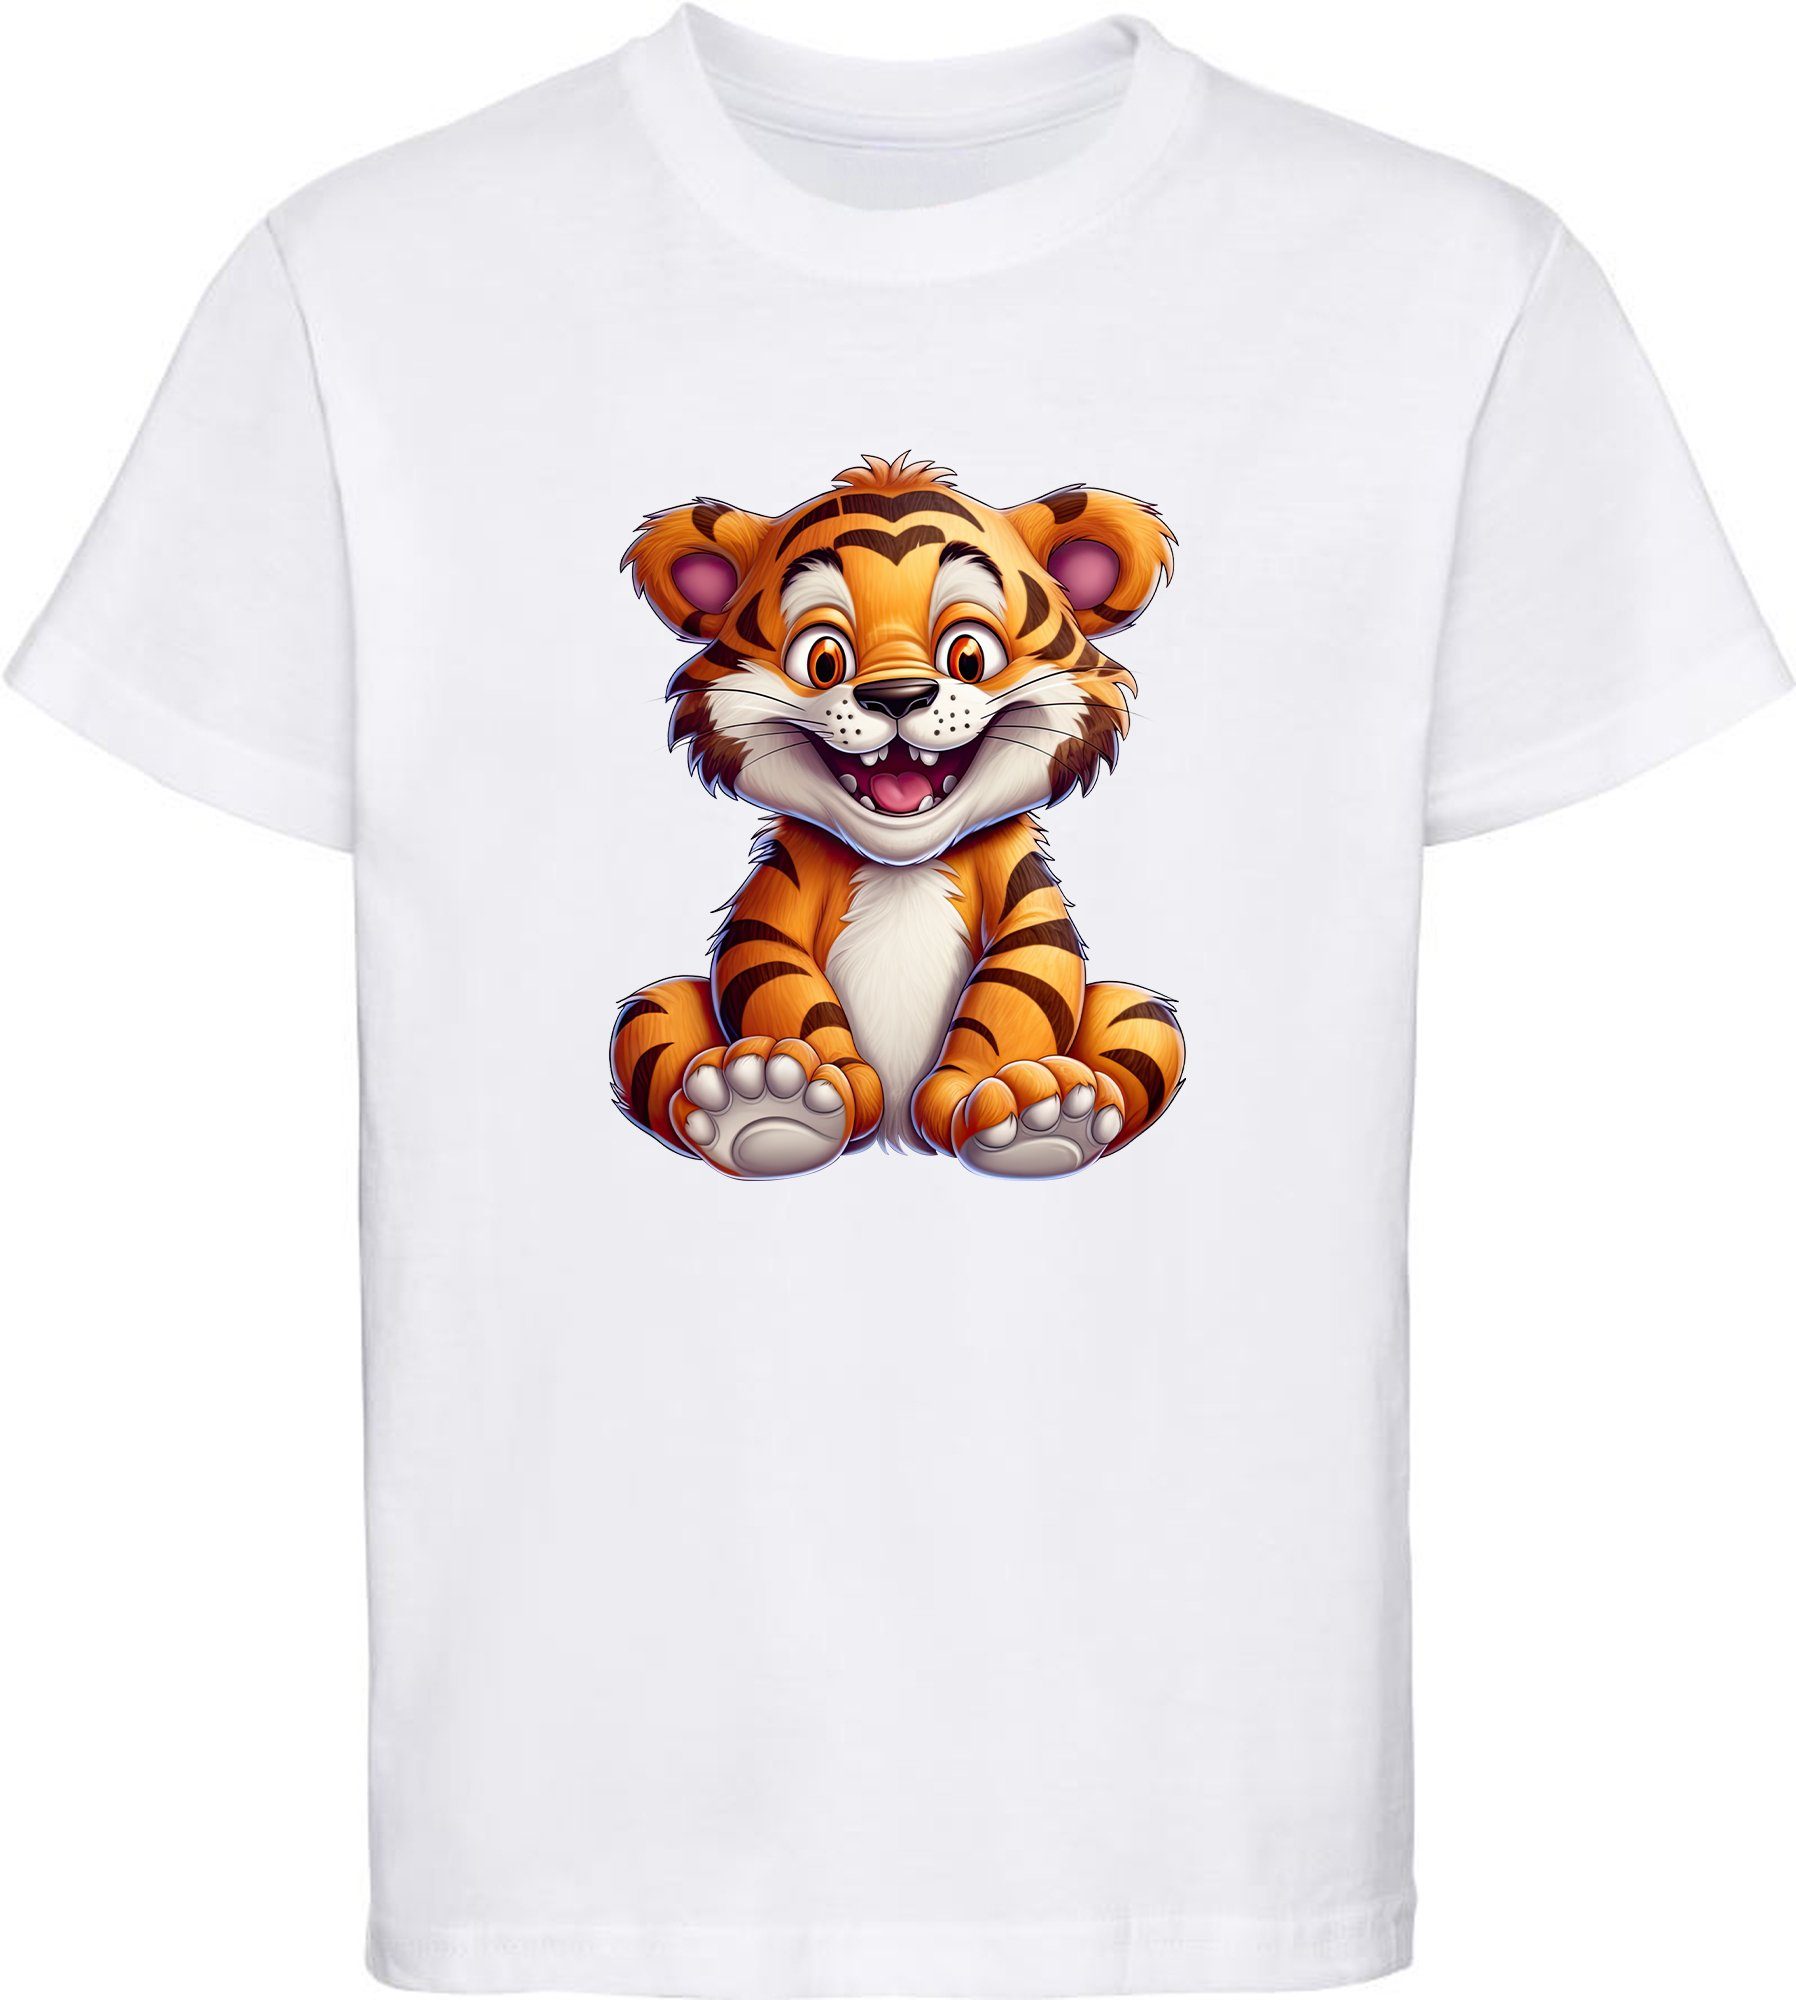 Baumwollshirt Kinder MyDesign24 i278 T-Shirt weiss Aufdruck, - Shirt mit Tiger Baby Print Wildtier bedruckt